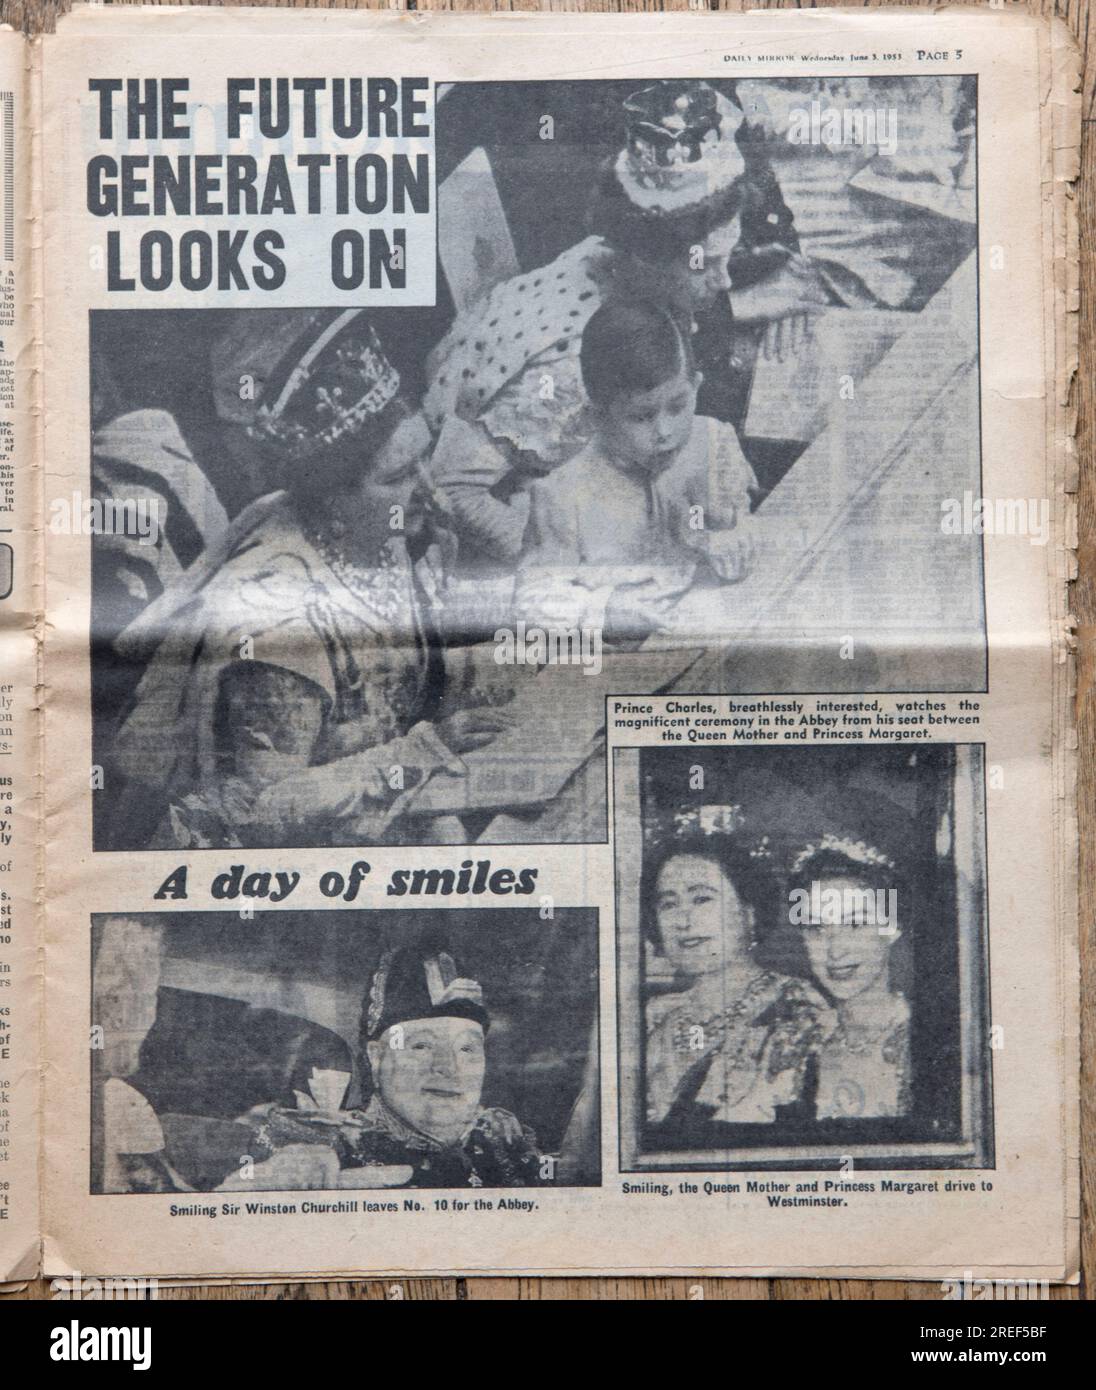 Spécial couronnement de la reine Elizabeth II, 2 juin 1953. Le journal Daily Mirror. Nouvelles de la page d'accueil. Daté du 3 juin 1953. Une vieille copie usée d'un tabloïd britannique. Années 1950 Grande-Bretagne Royaume-Uni. Banque D'Images